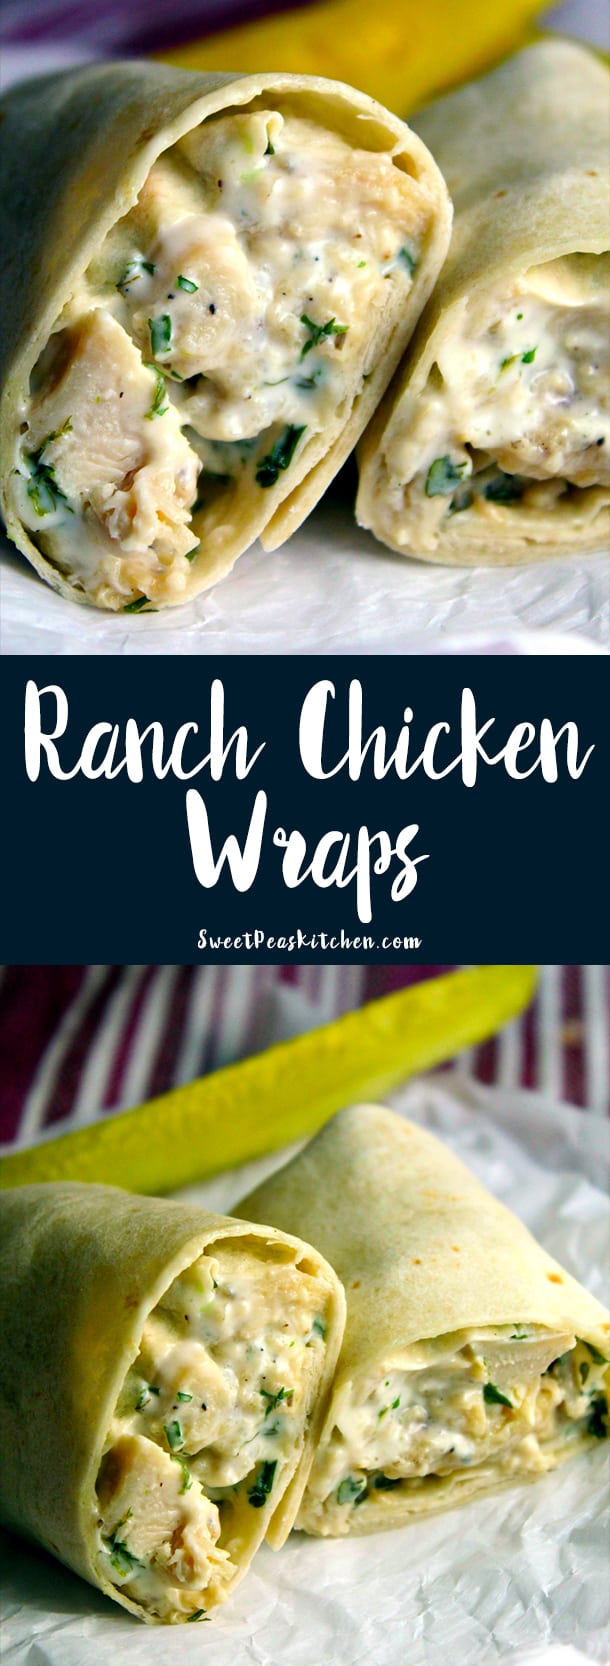 Ranch Chicken Wraps